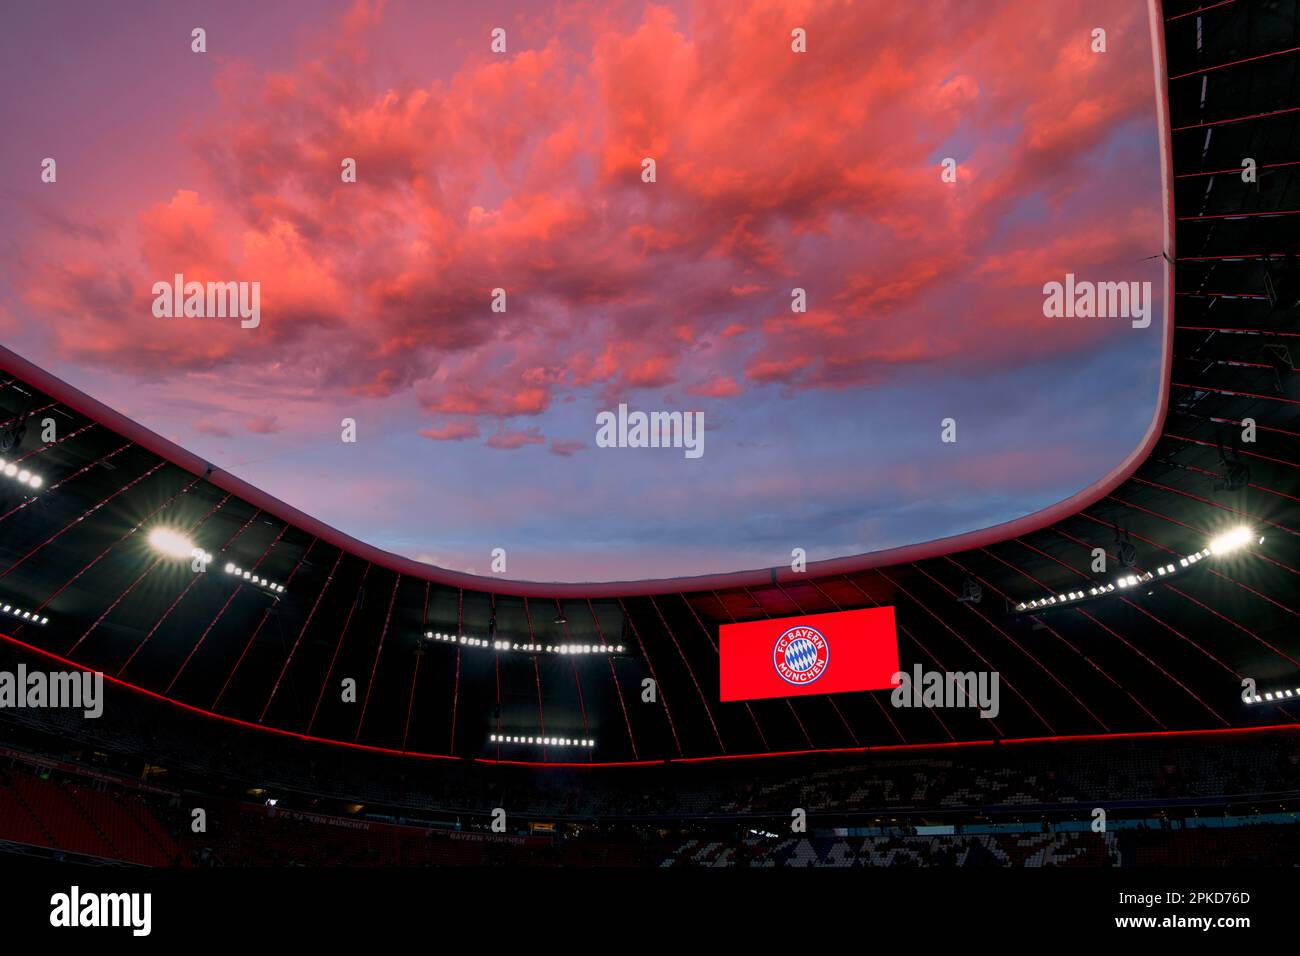 Panoramica, Coppa DFB, tramonto suggestivo, cielo serale, nuvole rosse sull'Allianz Arena, tabellone con logo FC Bayern Monaco, FCB, Monaco, Baviera Foto Stock